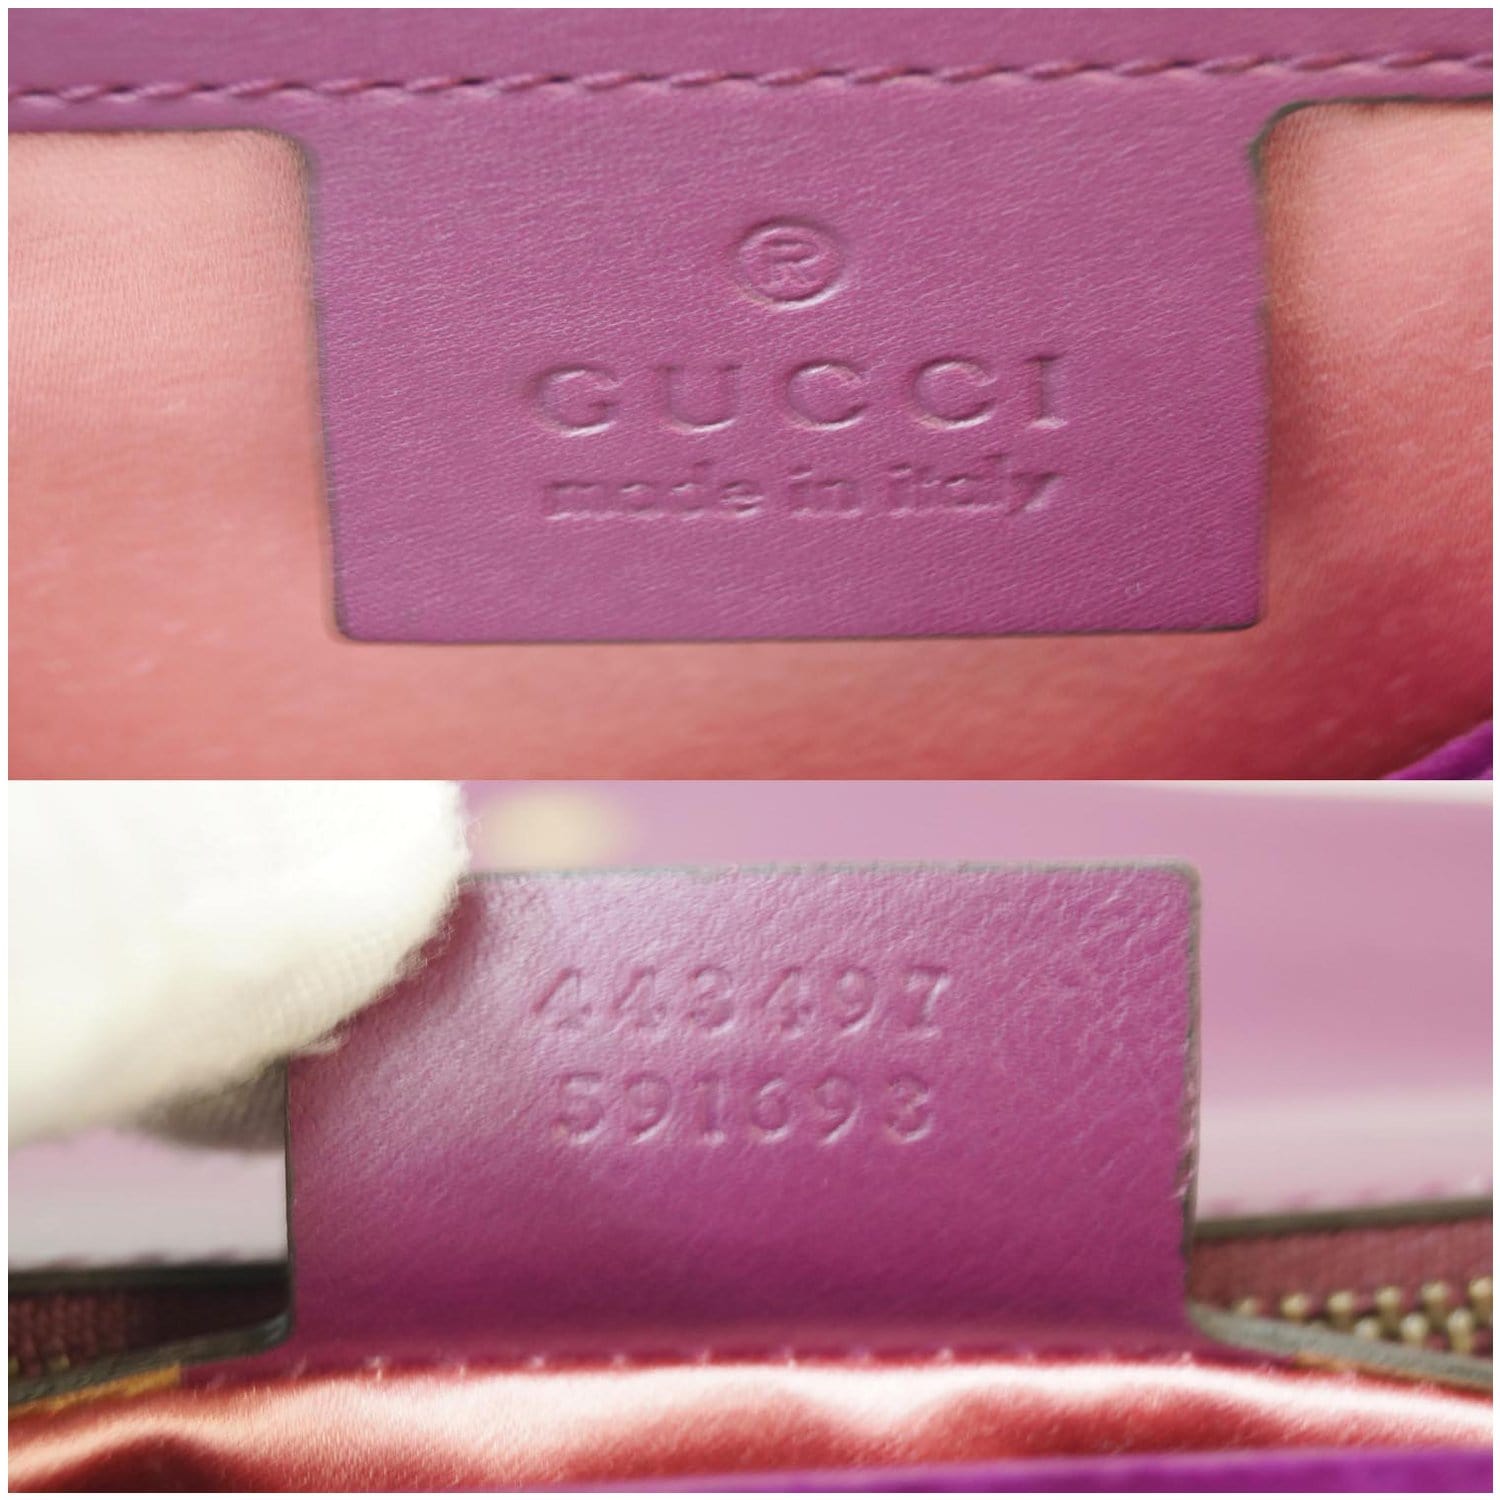 Túi Nữ Gucci Đeo Vai Marmont Với Logo GG Chất Da Mềm